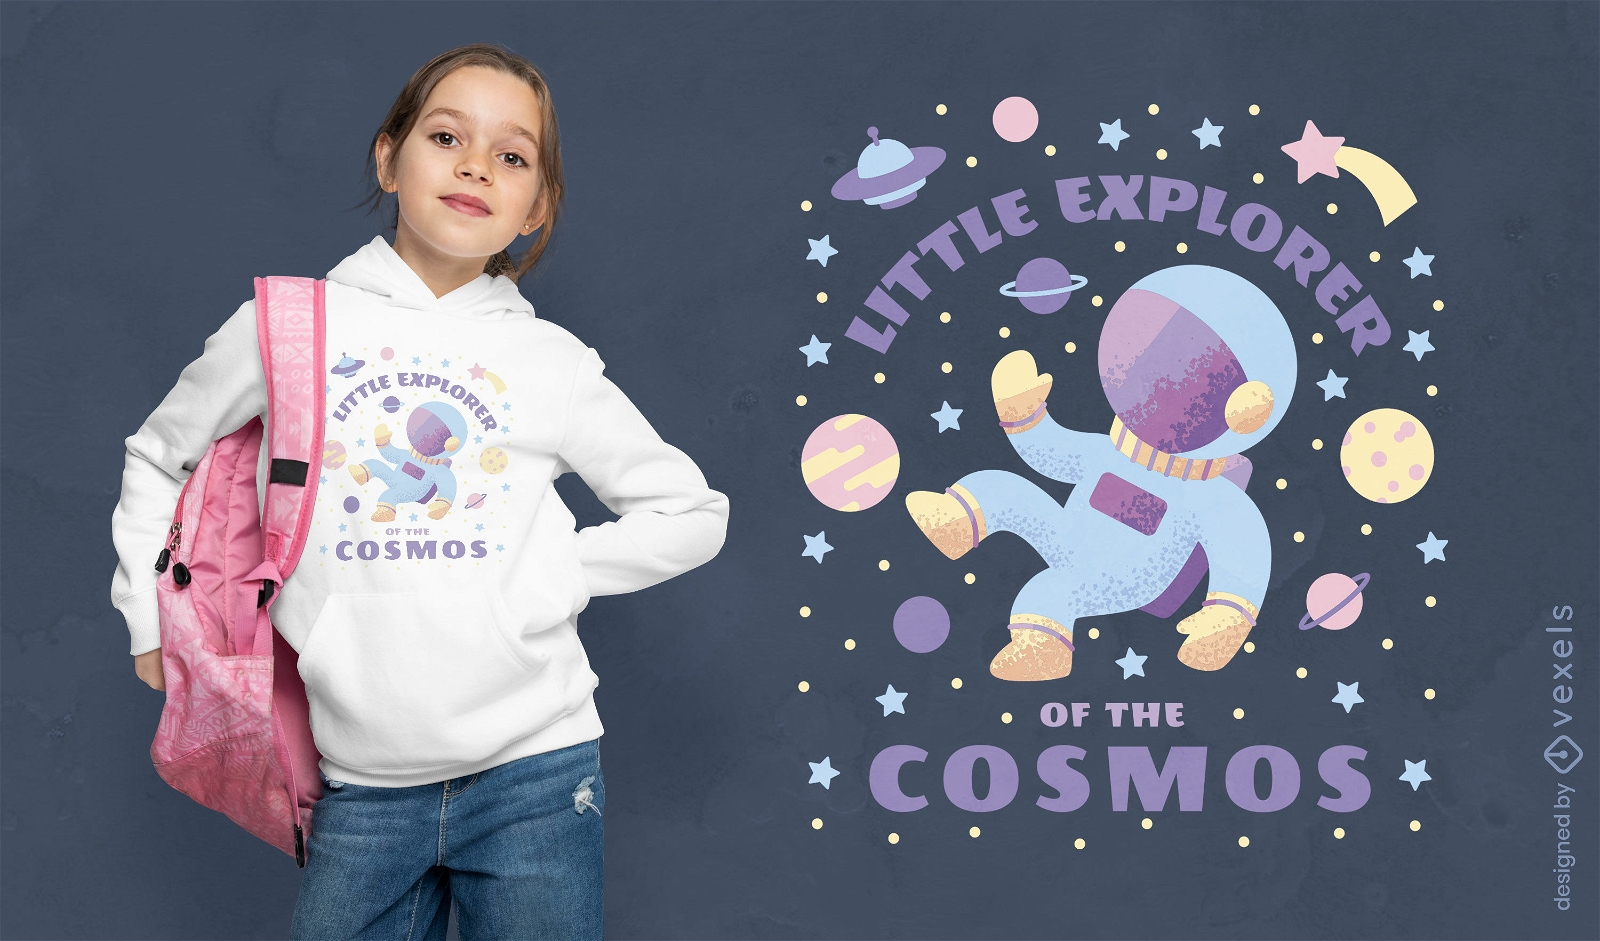 Little cosmic explorer t-shirt design